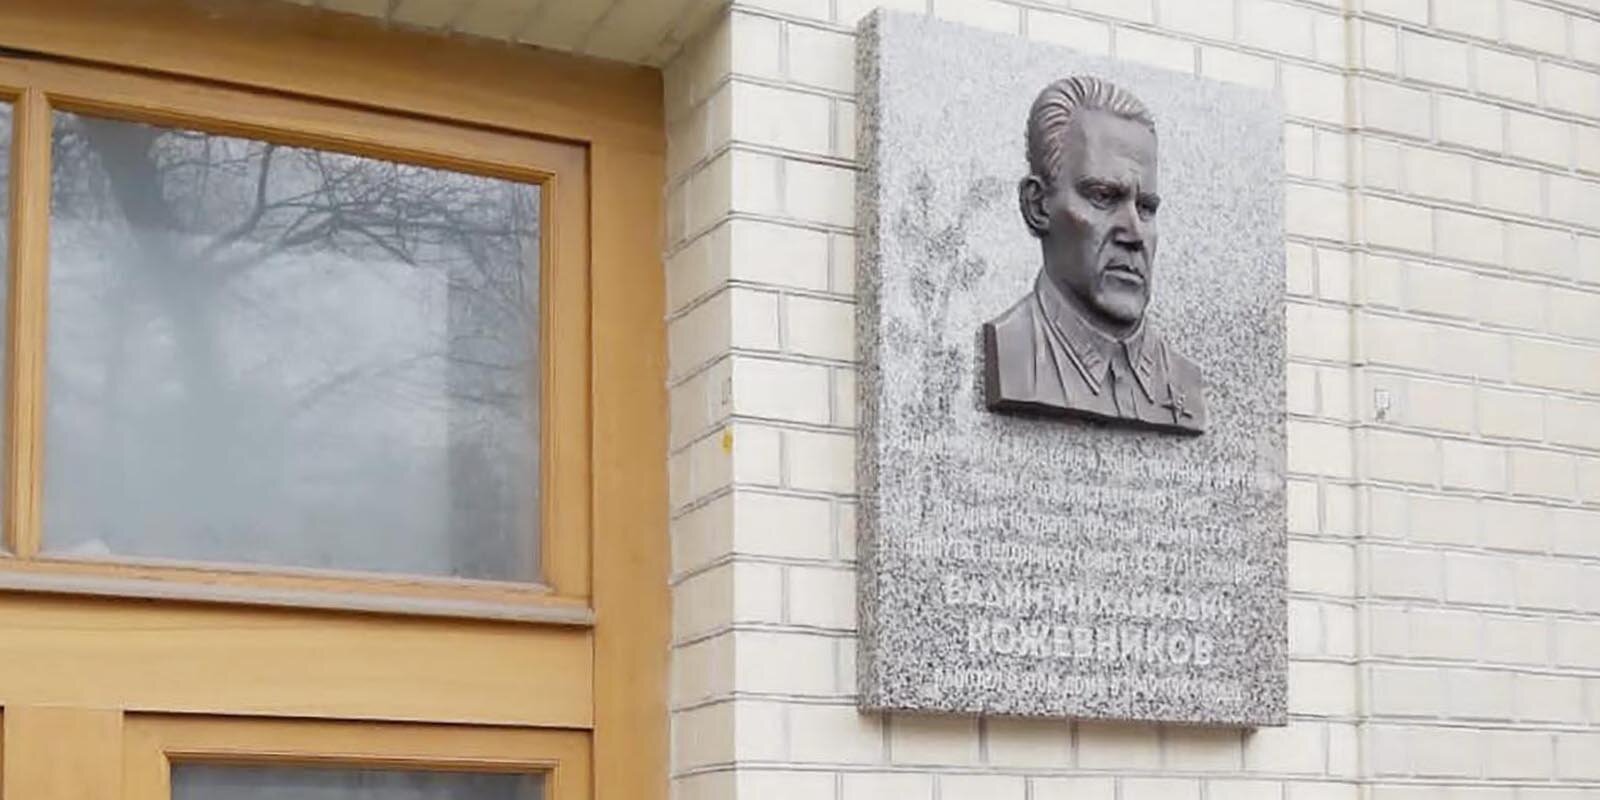 Мемориальную доску писателю и общественному деятелю открыли в Тверском районе. Фото: сайт мэра Москвы